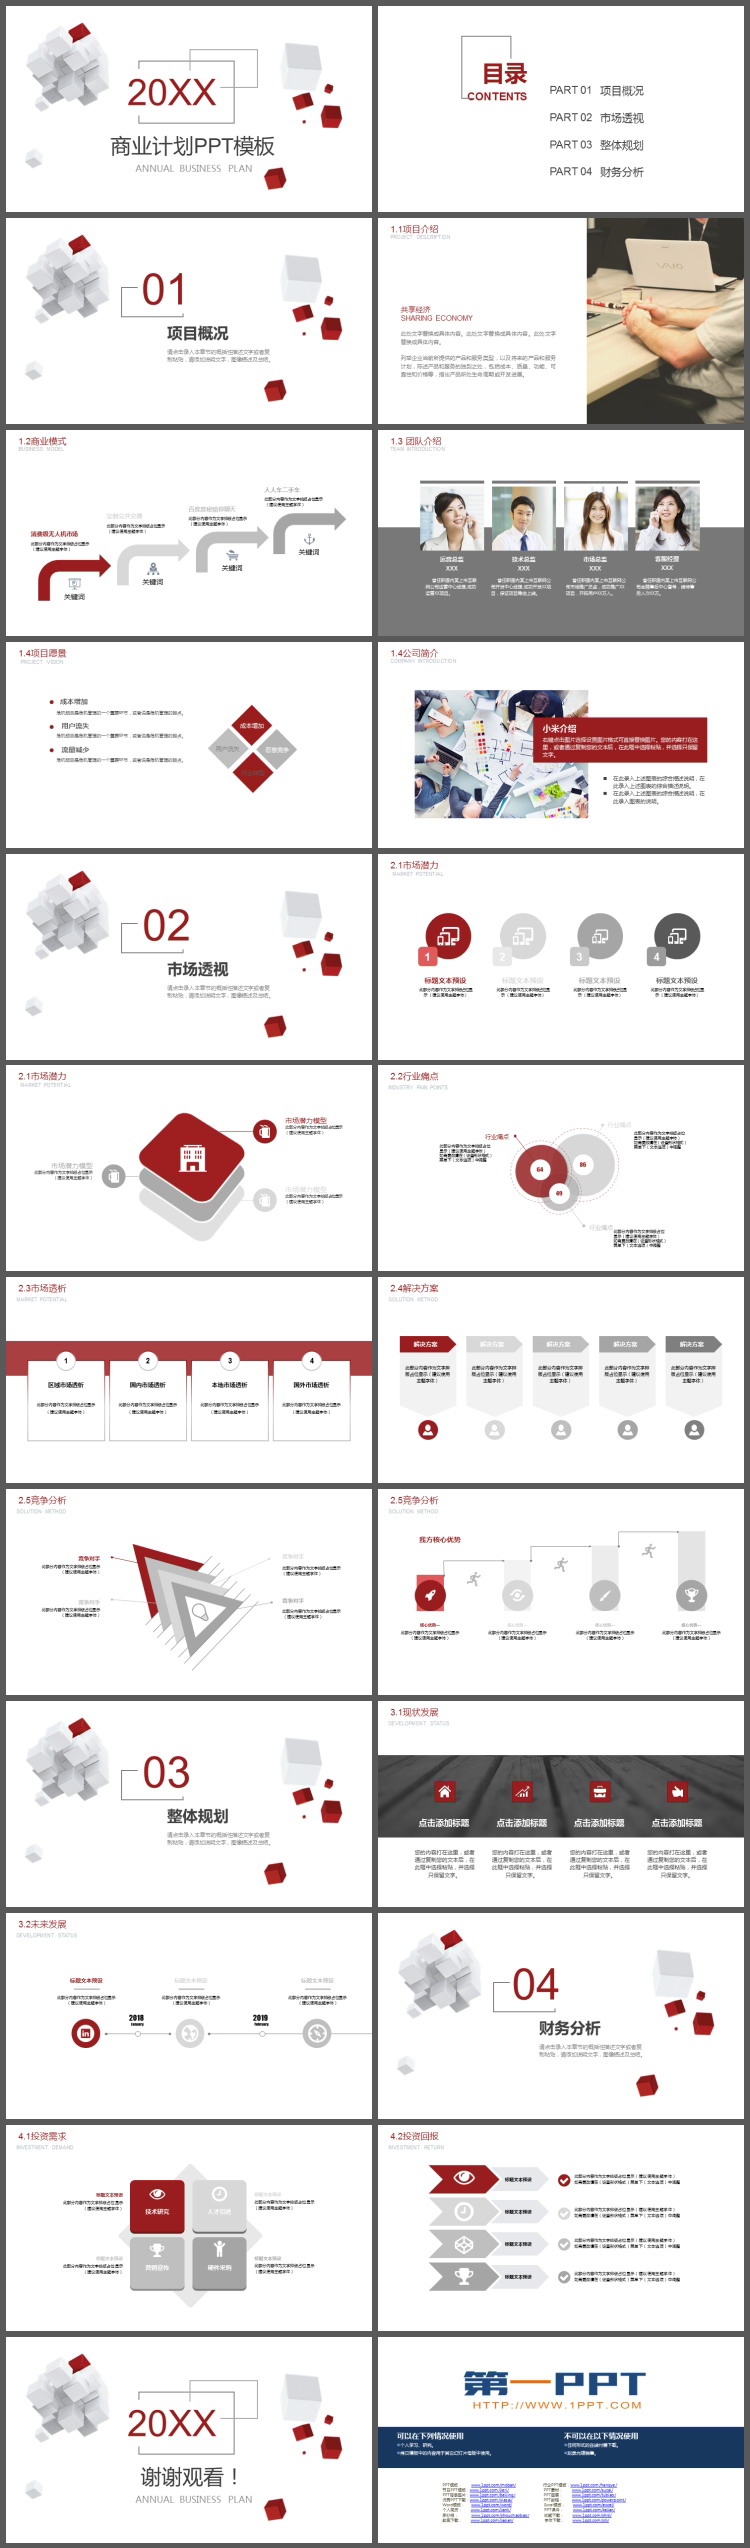 红白立体方块背景的商业计划书PPT模板